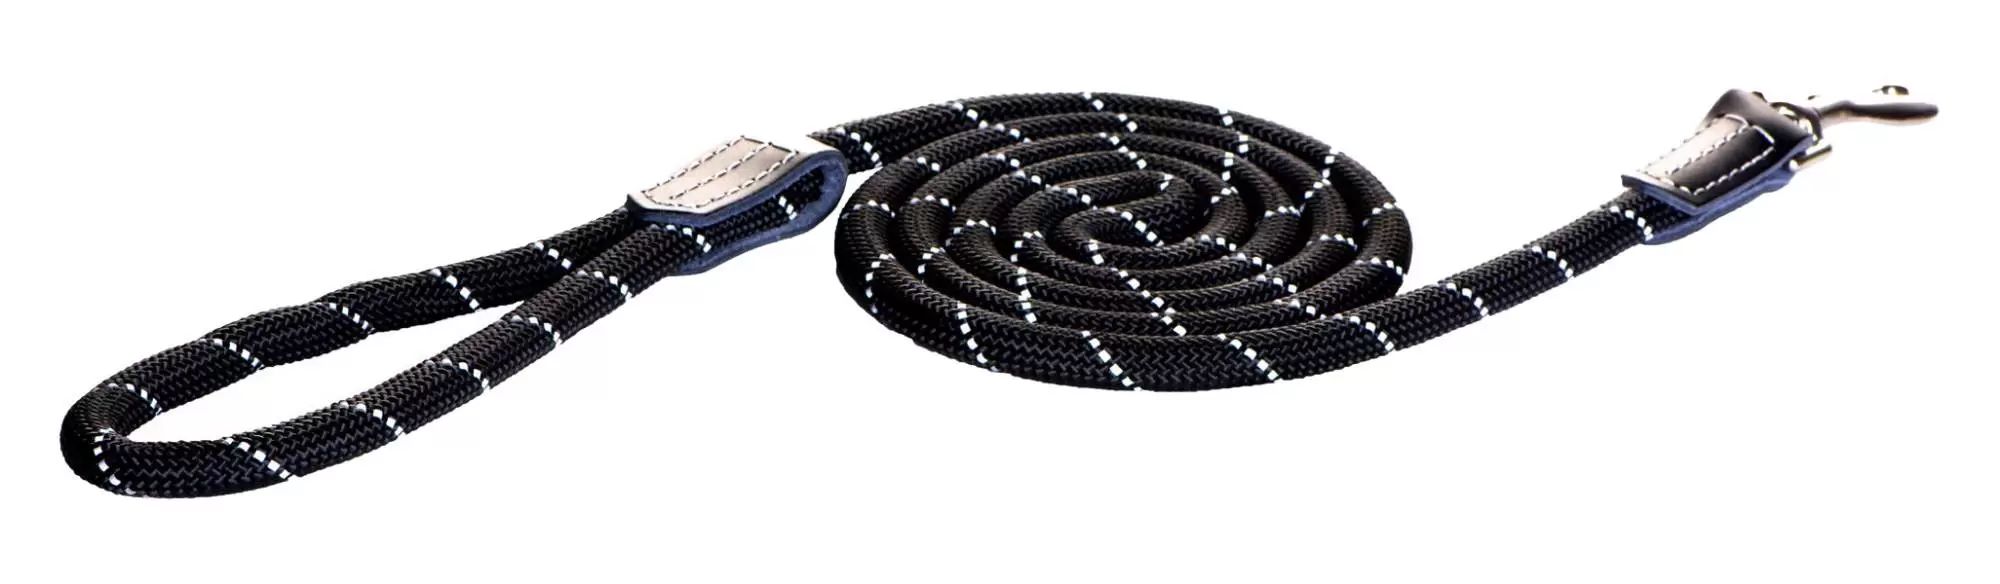 Rogz поводок удлиненный круглый для мелких пород размер S серия Rope длина 1,8 м черный